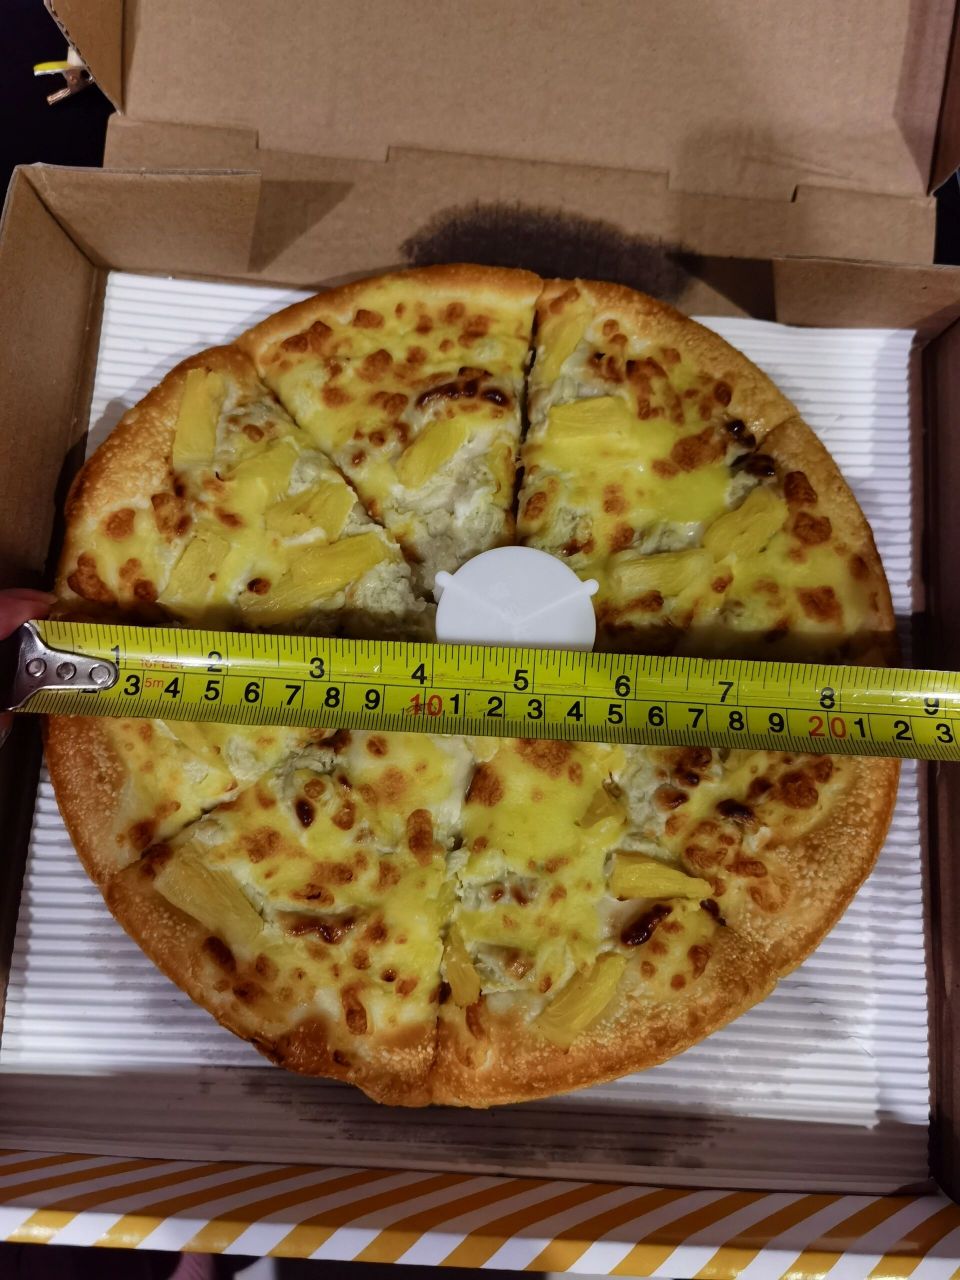 6英寸 一个人看宝宝顾不上吃饭,中午定了2个披萨,1个8英寸一个10英寸